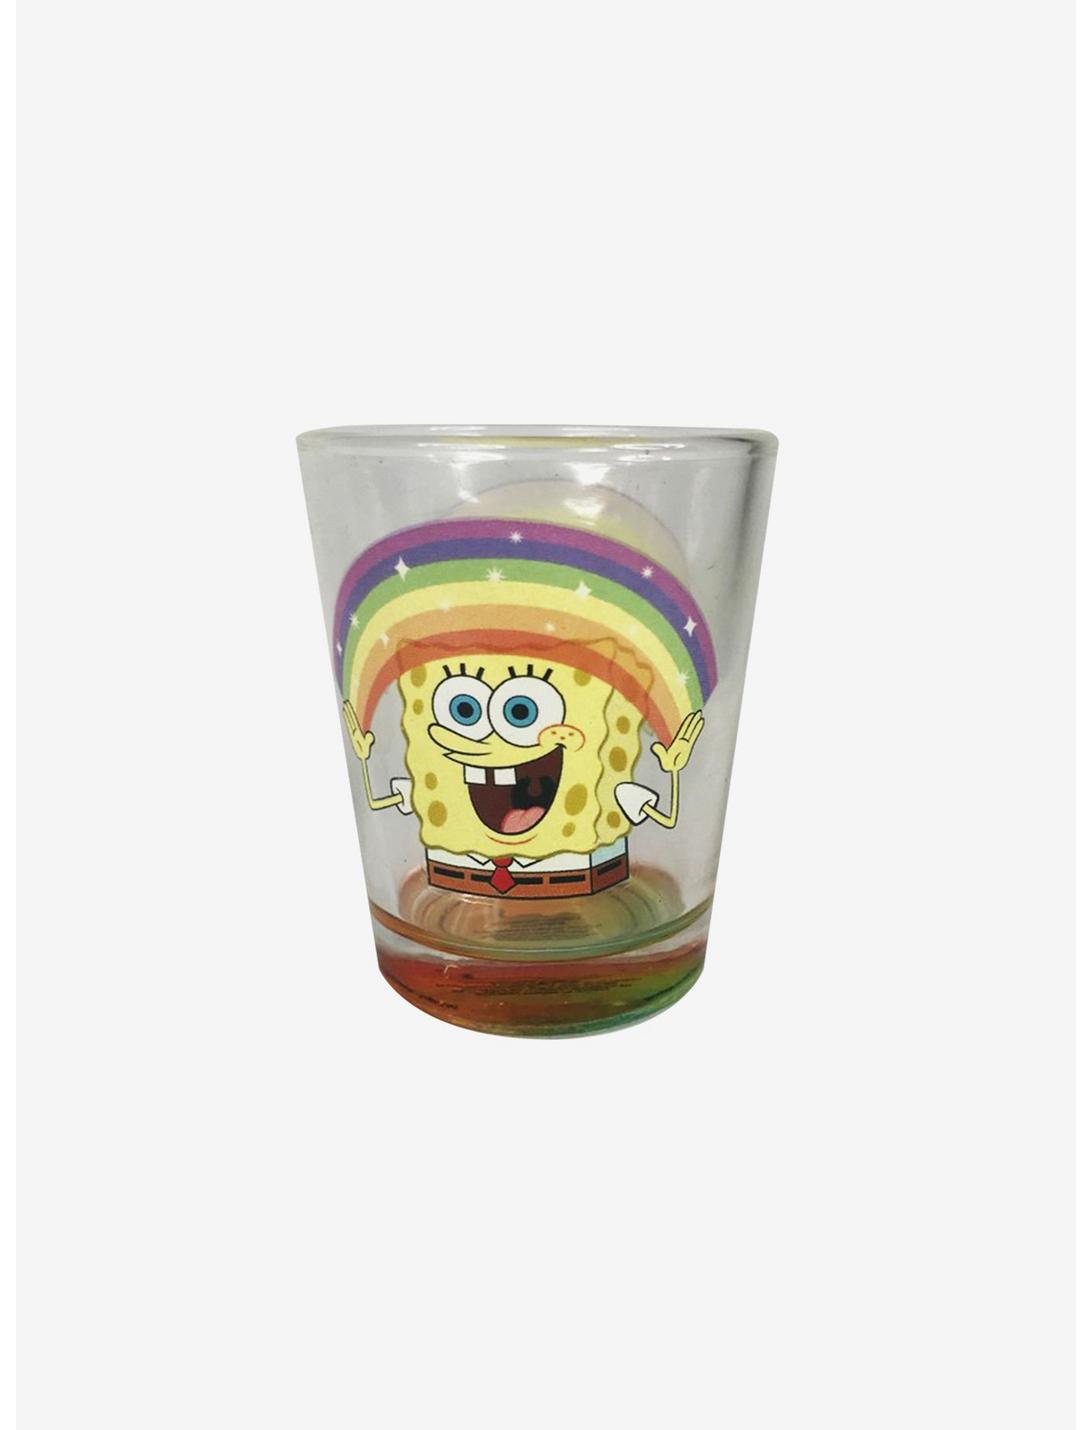 SpongeBob SquarePants Image on Clear Shot Glass